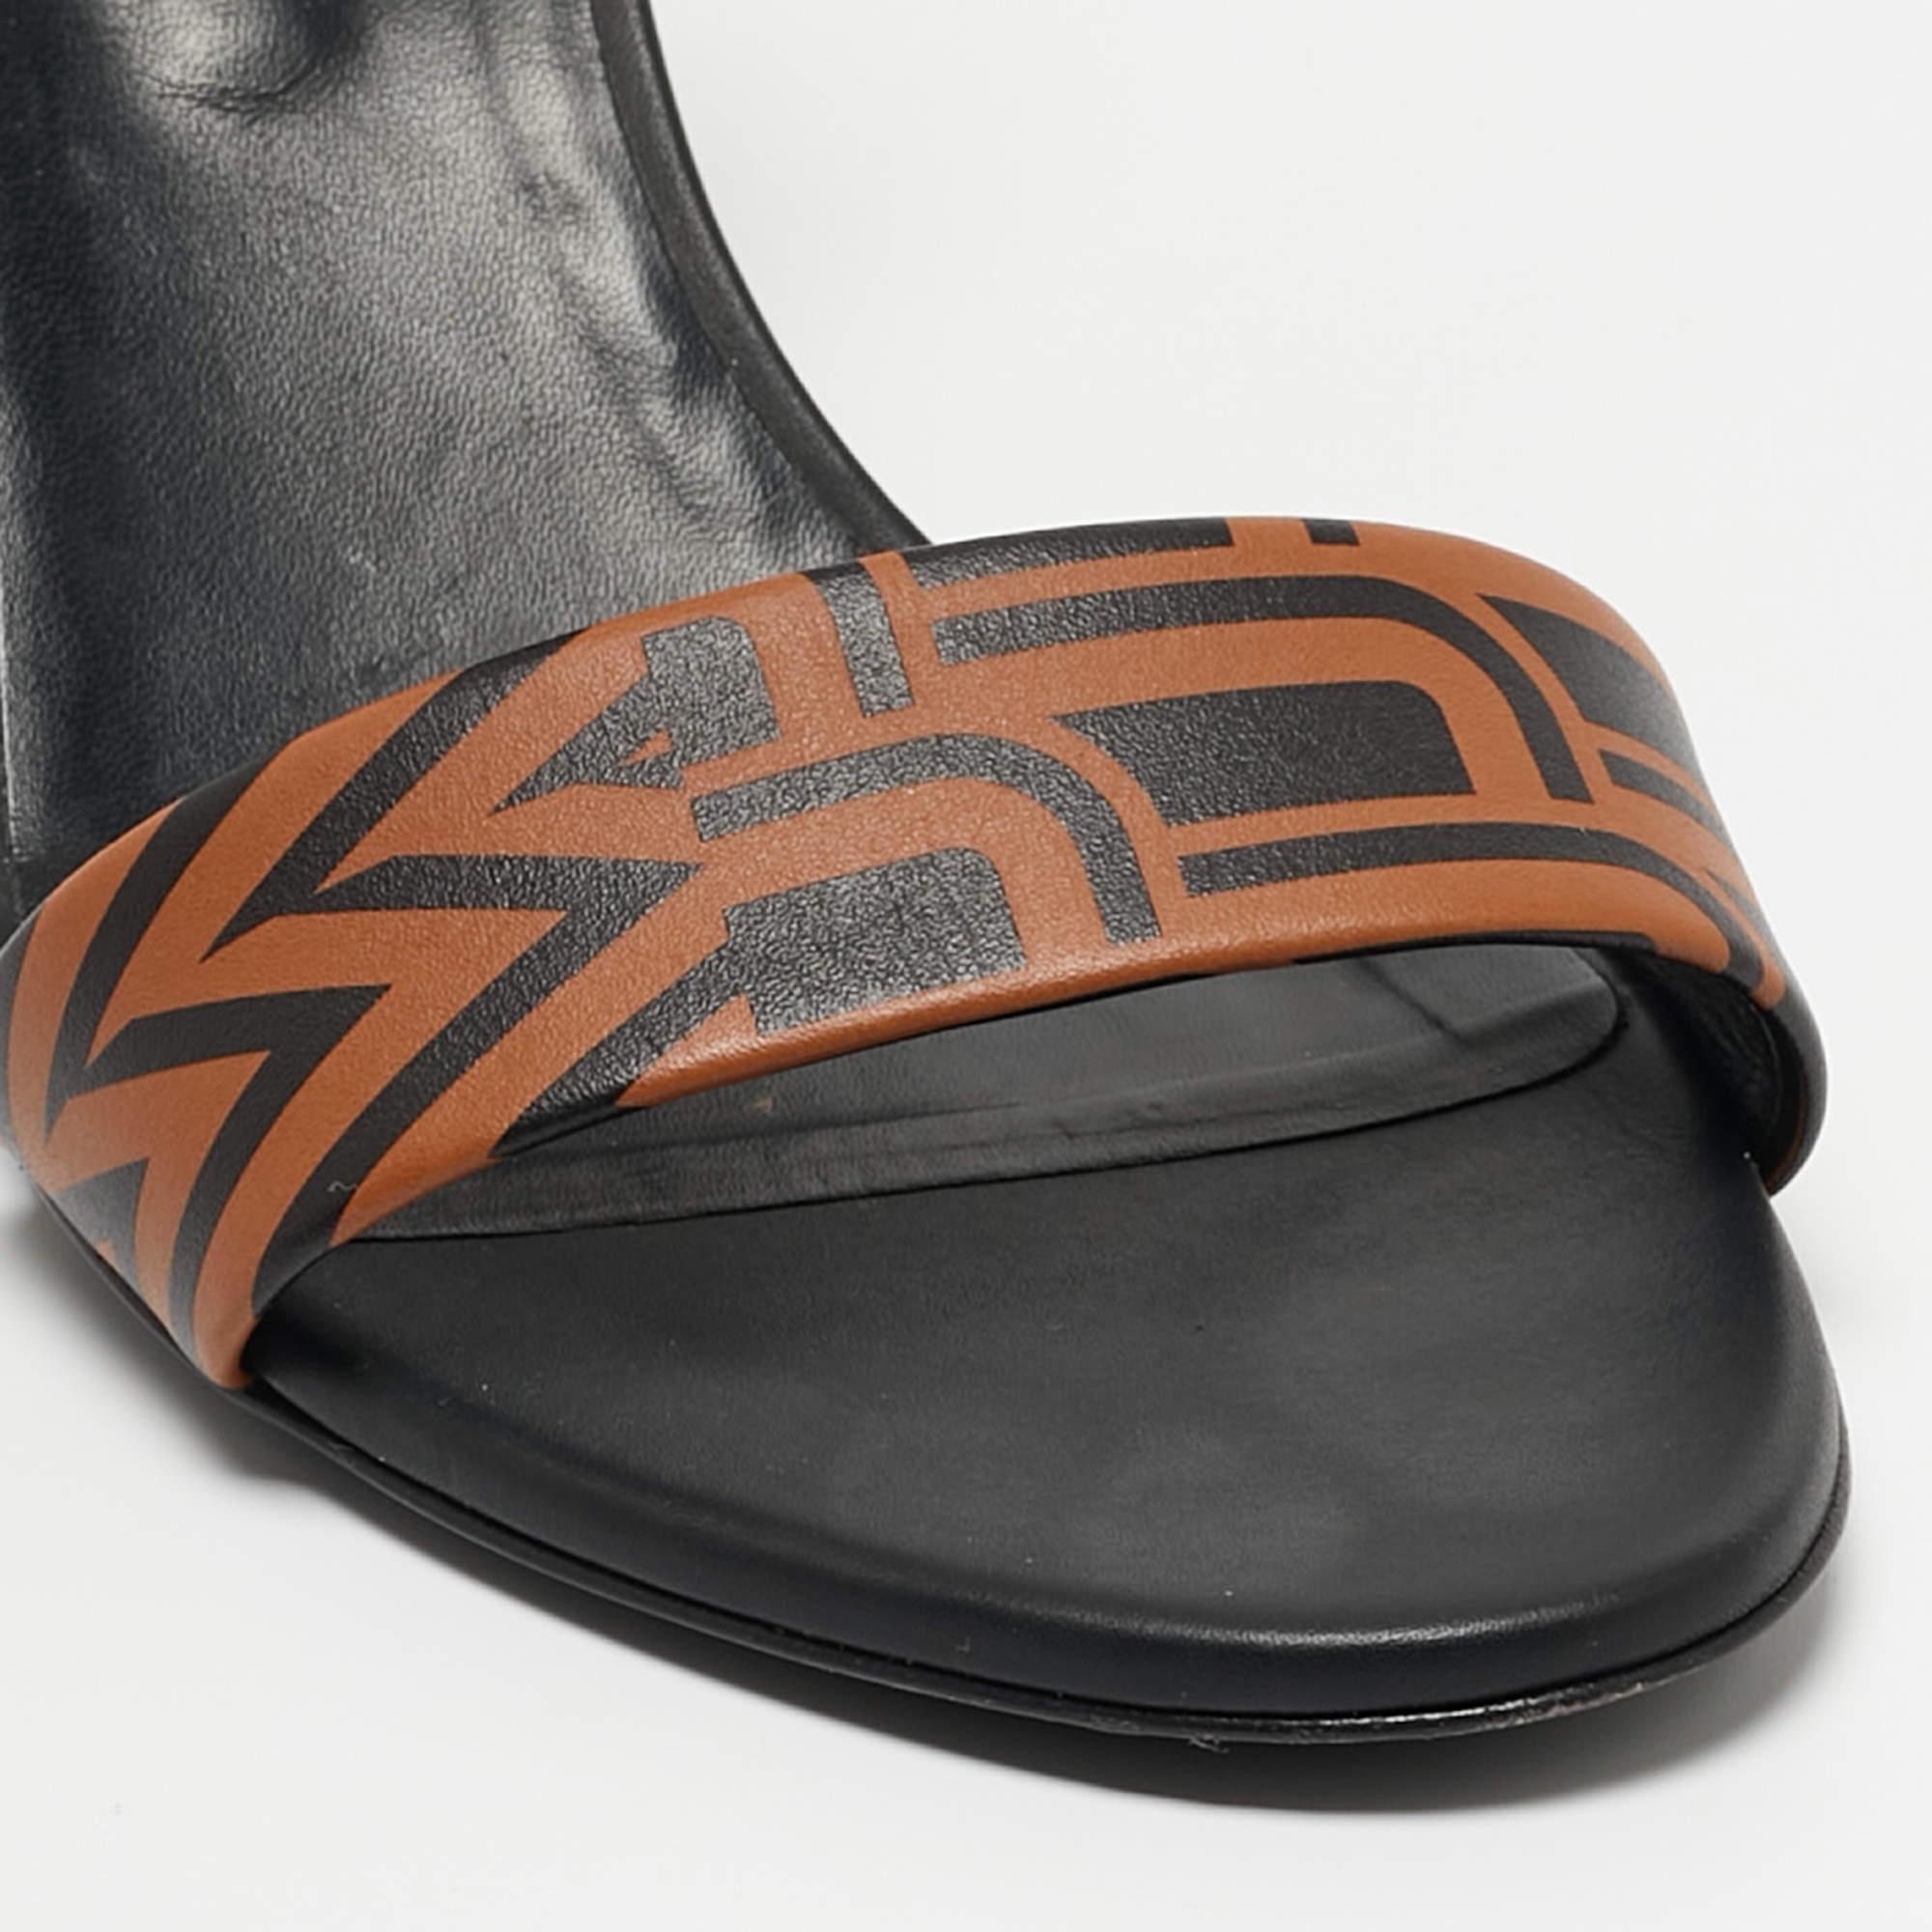 Hermes Sandales à talons compensés Acapulco en cuir imprimé noir/brun Taille 40 1